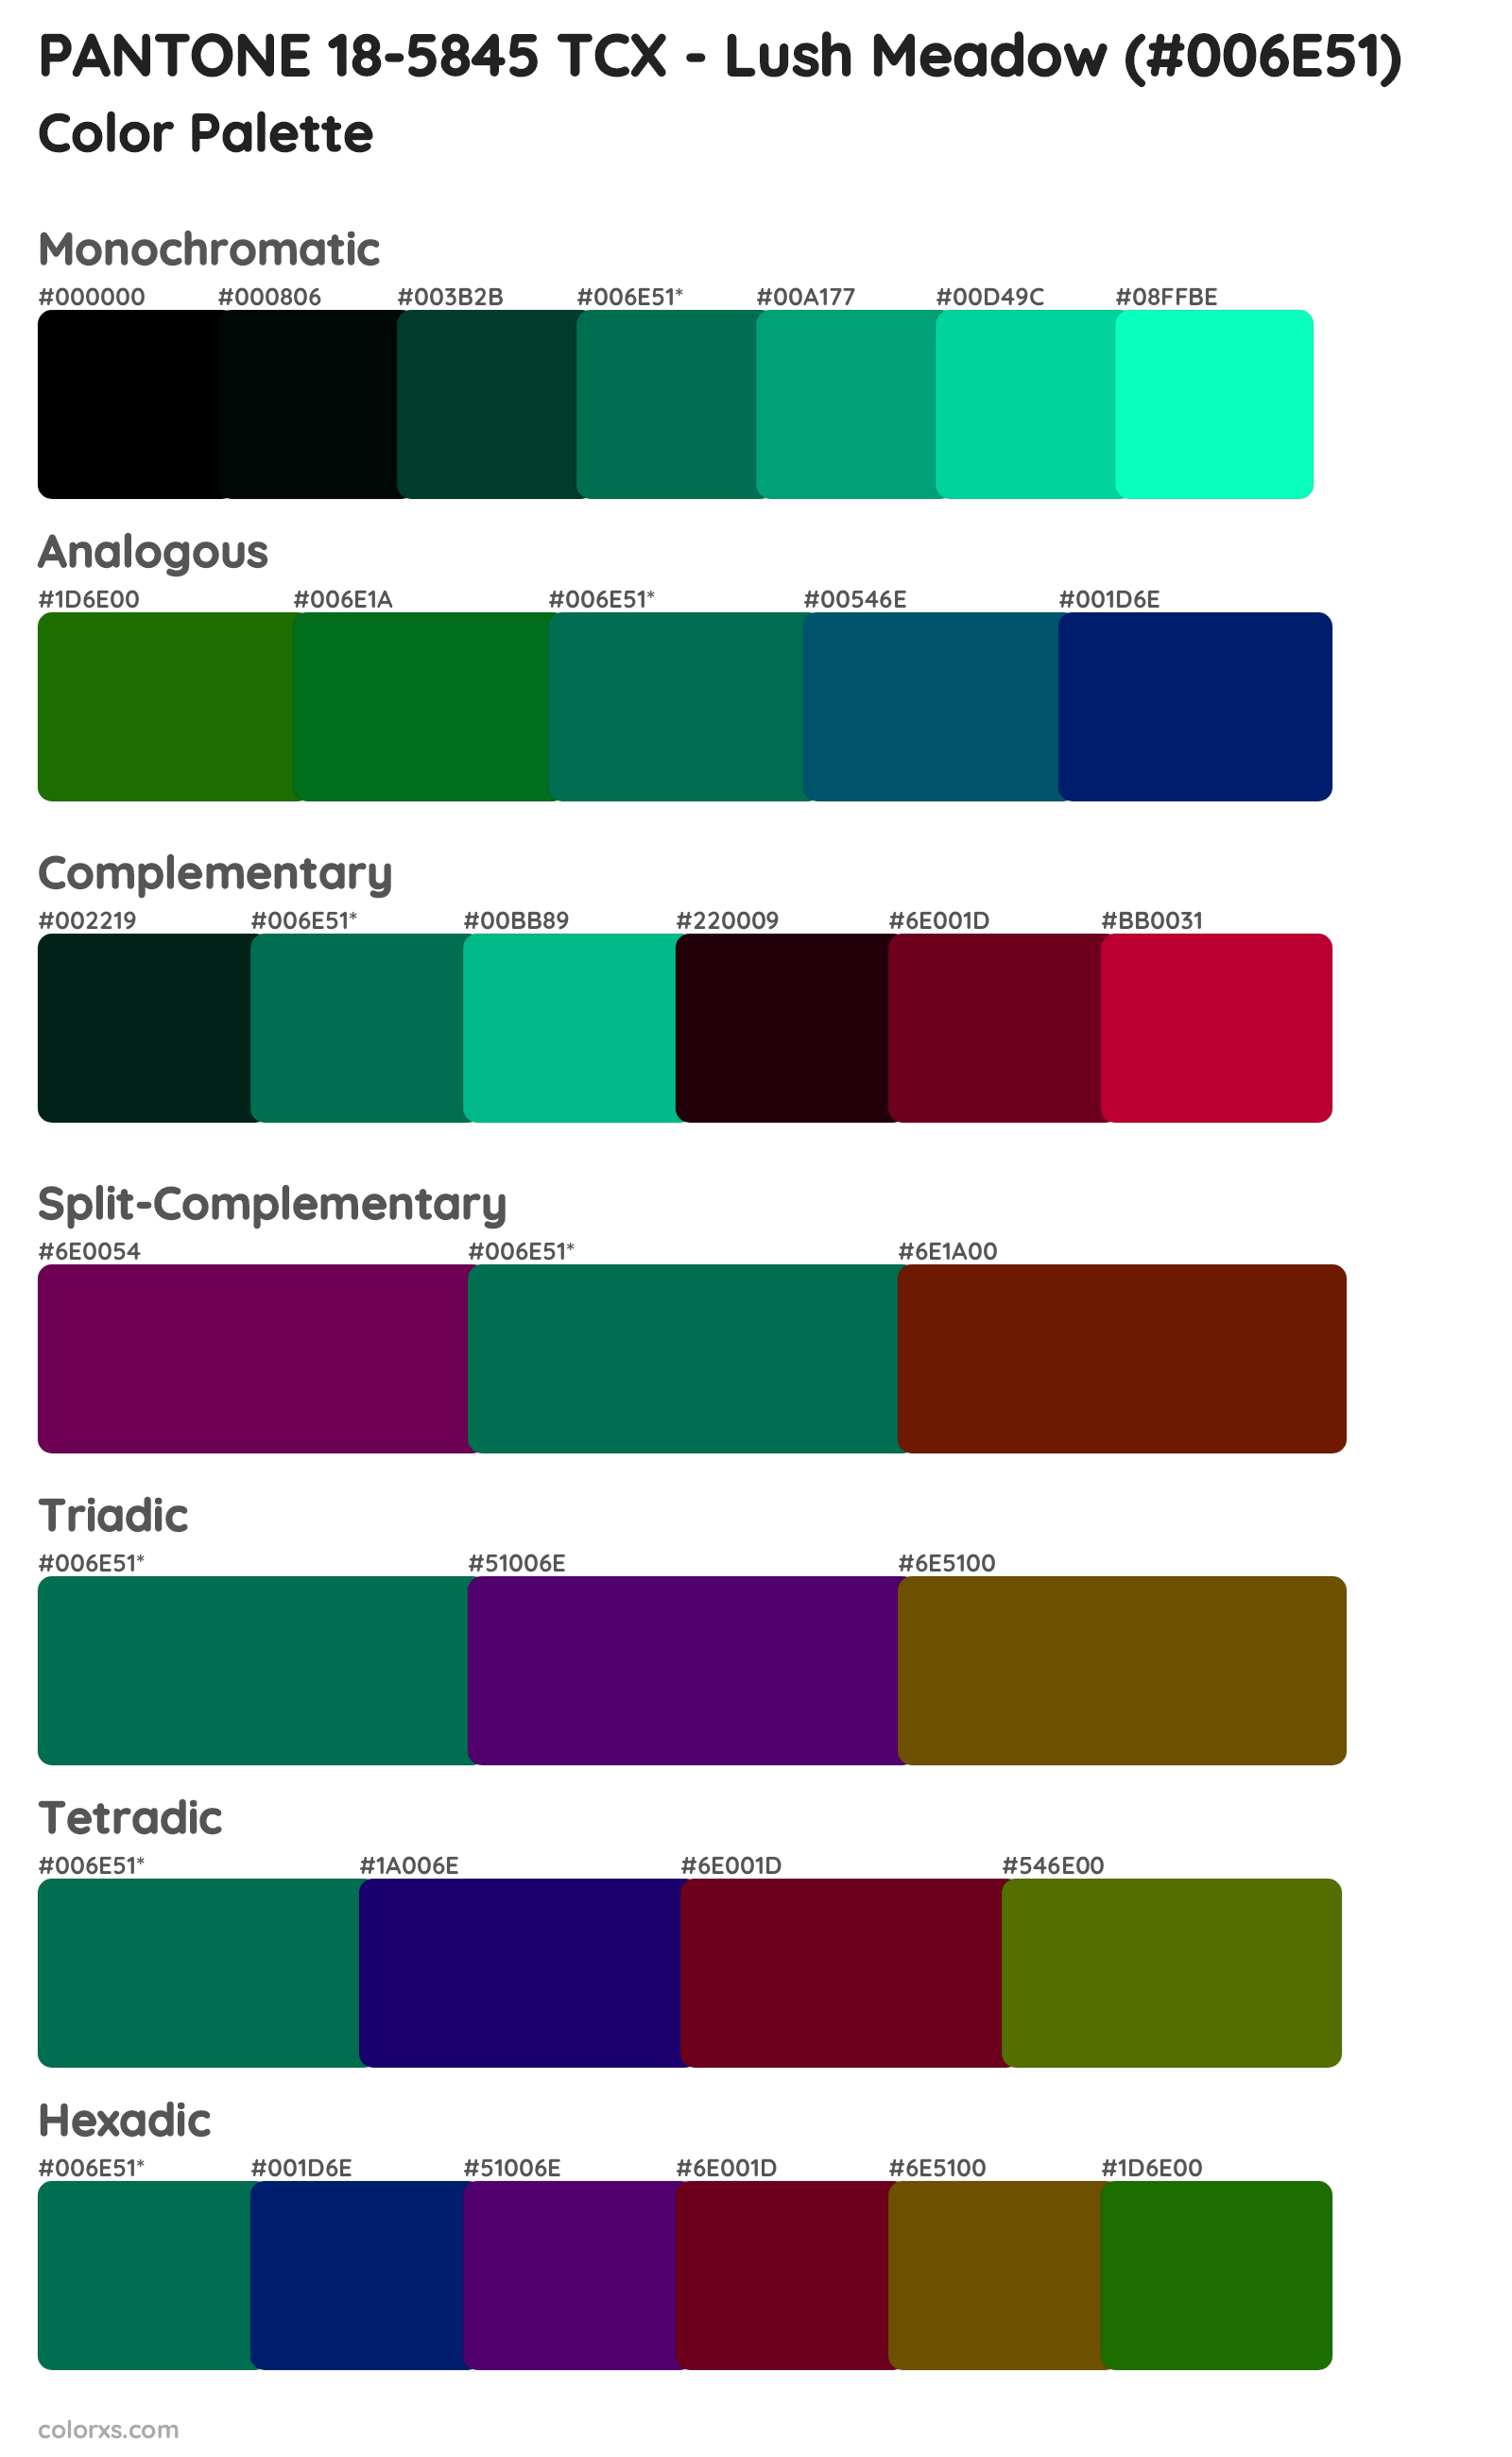 PANTONE 18-5845 TCX - Lush Meadow Color Scheme Palettes